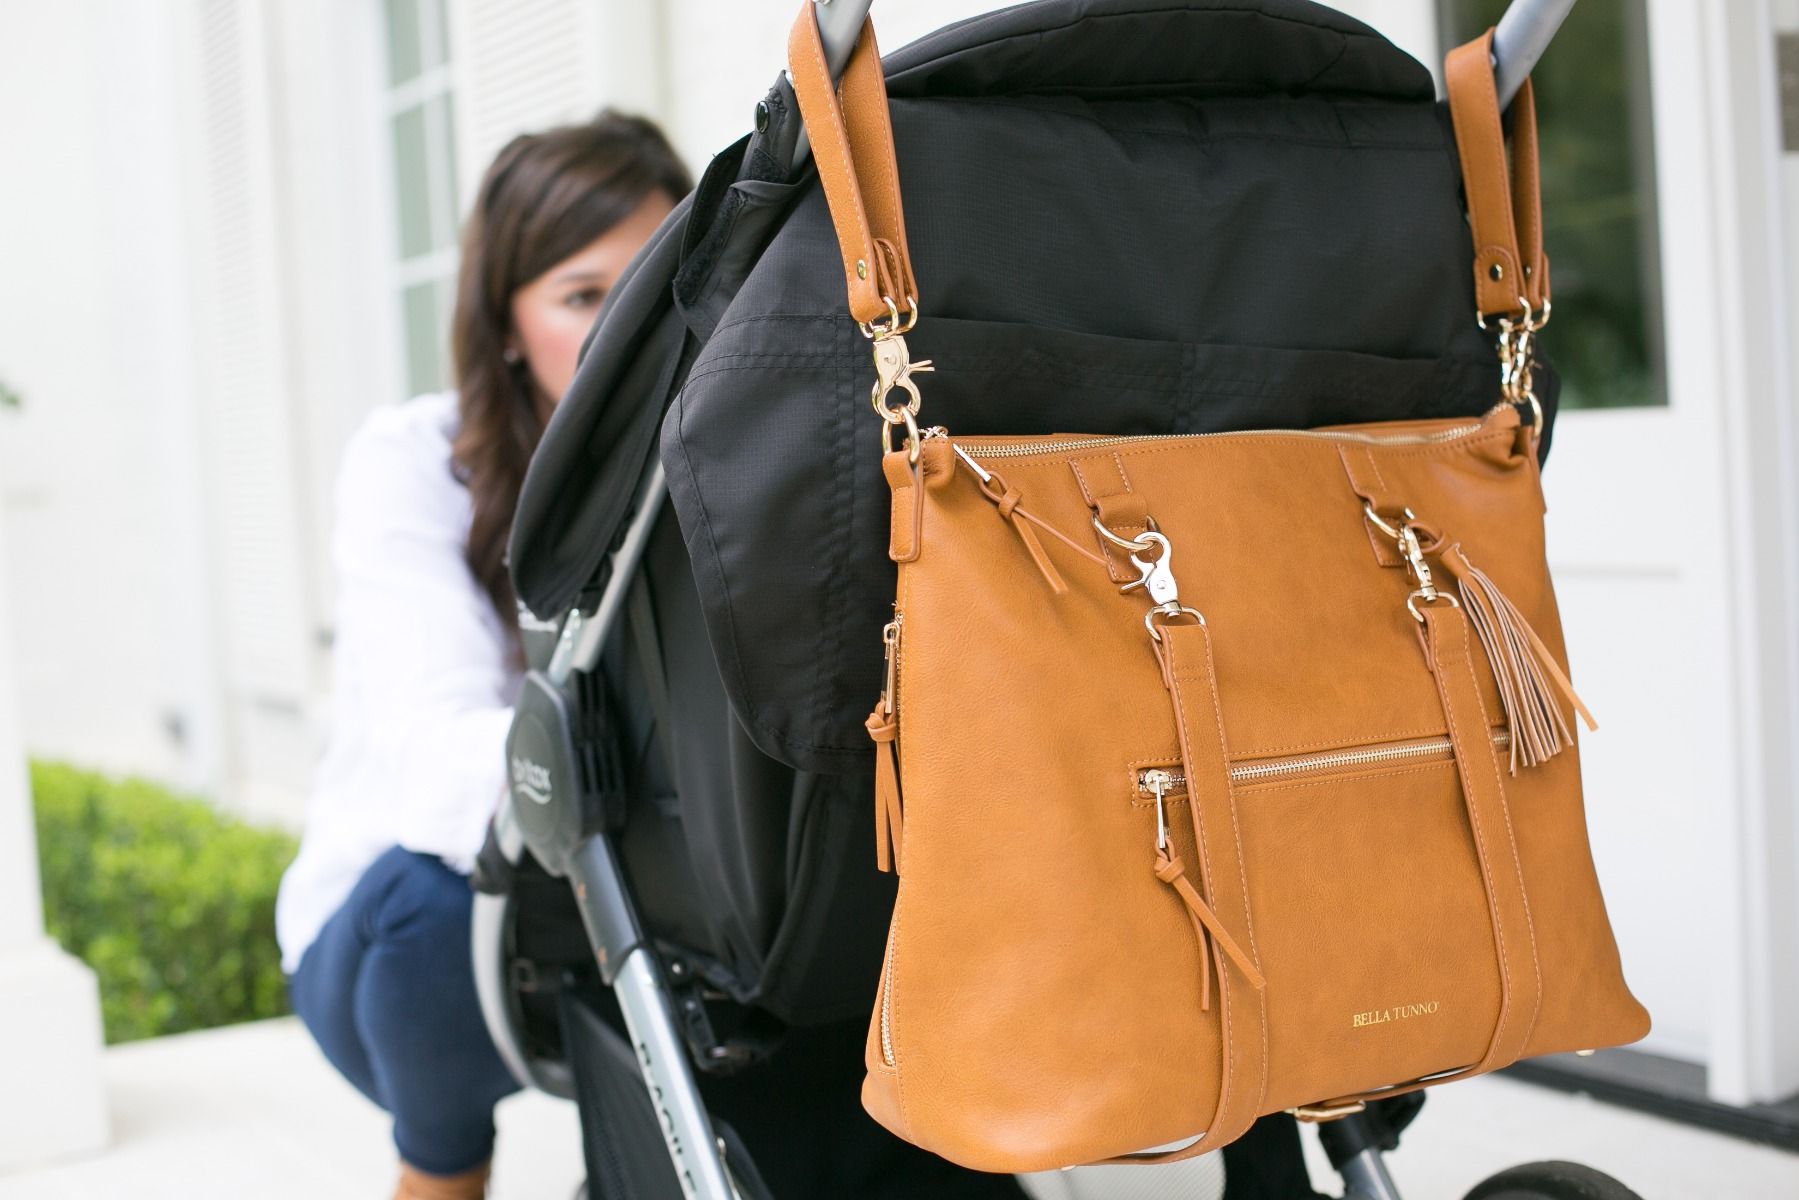 bella tunno boss bag backpack